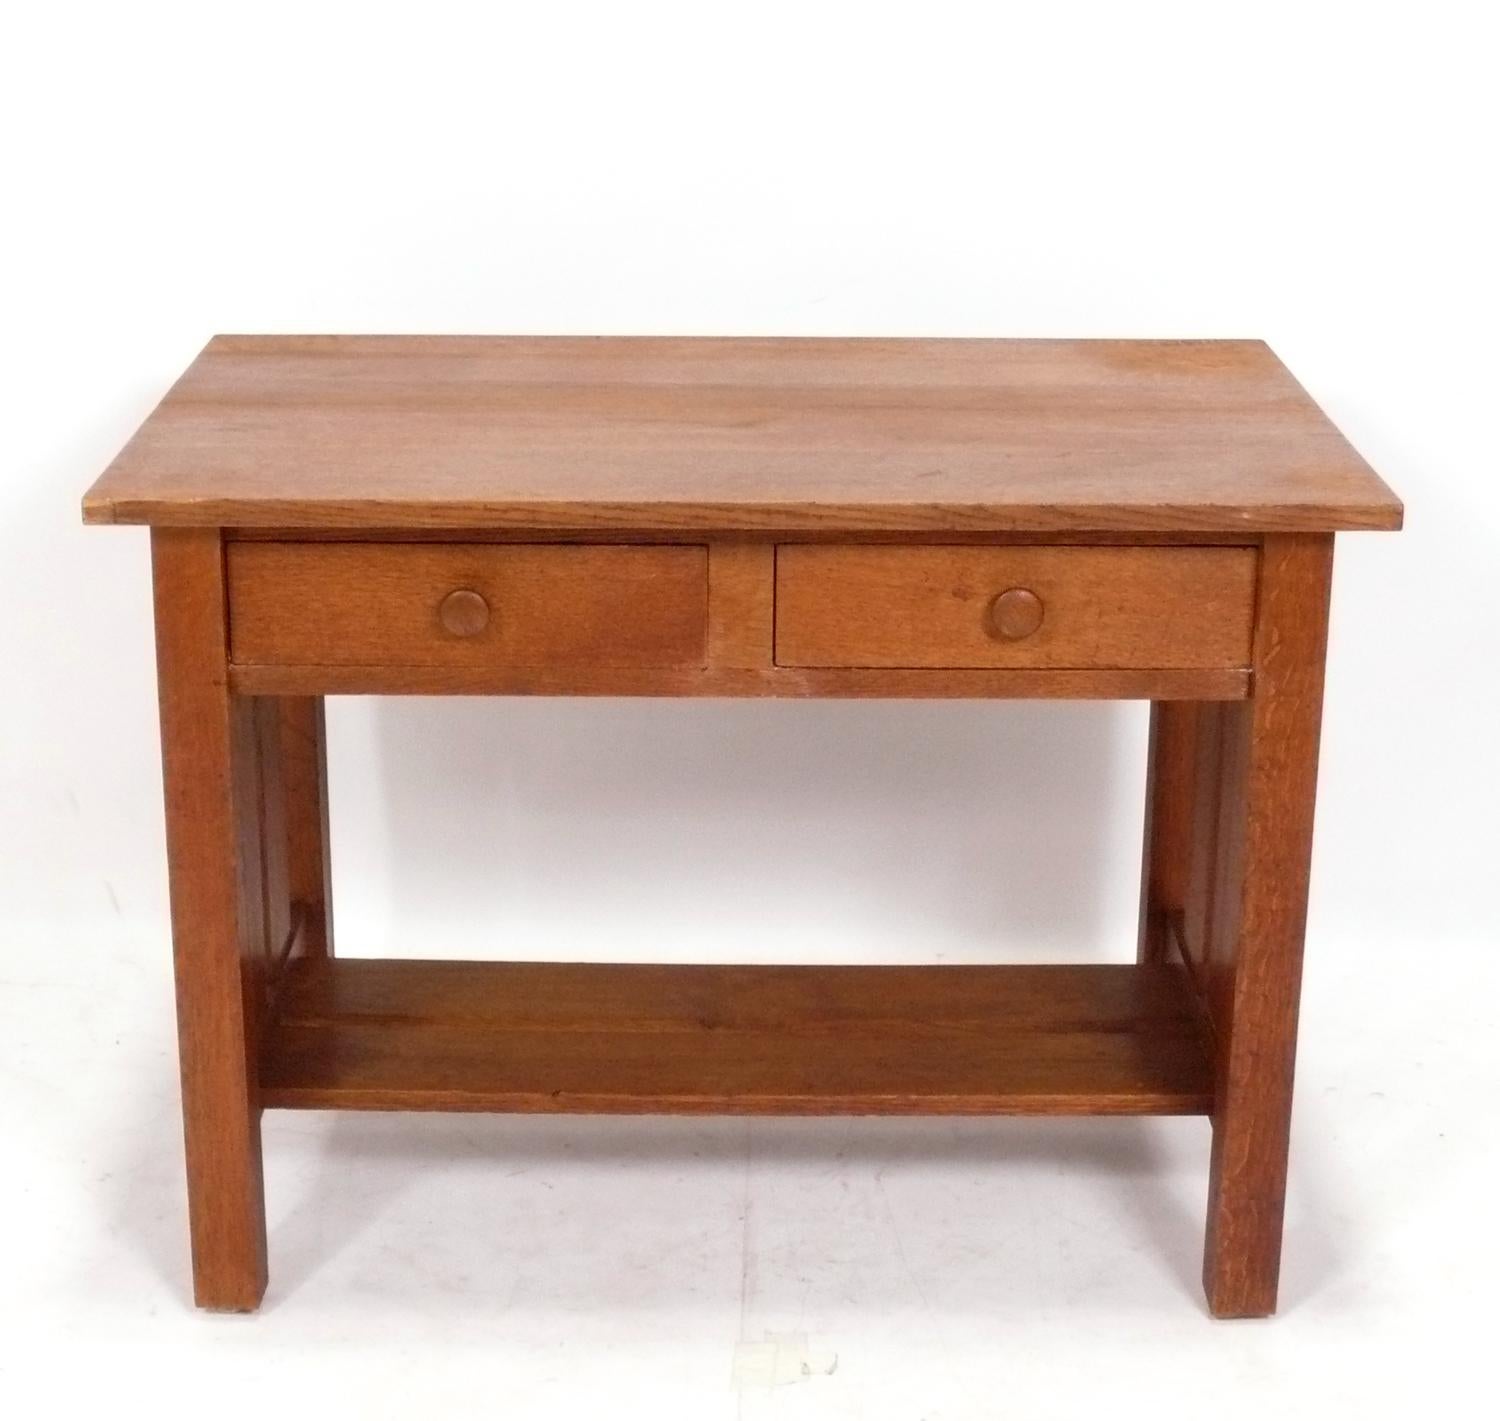 antique mission oak desk